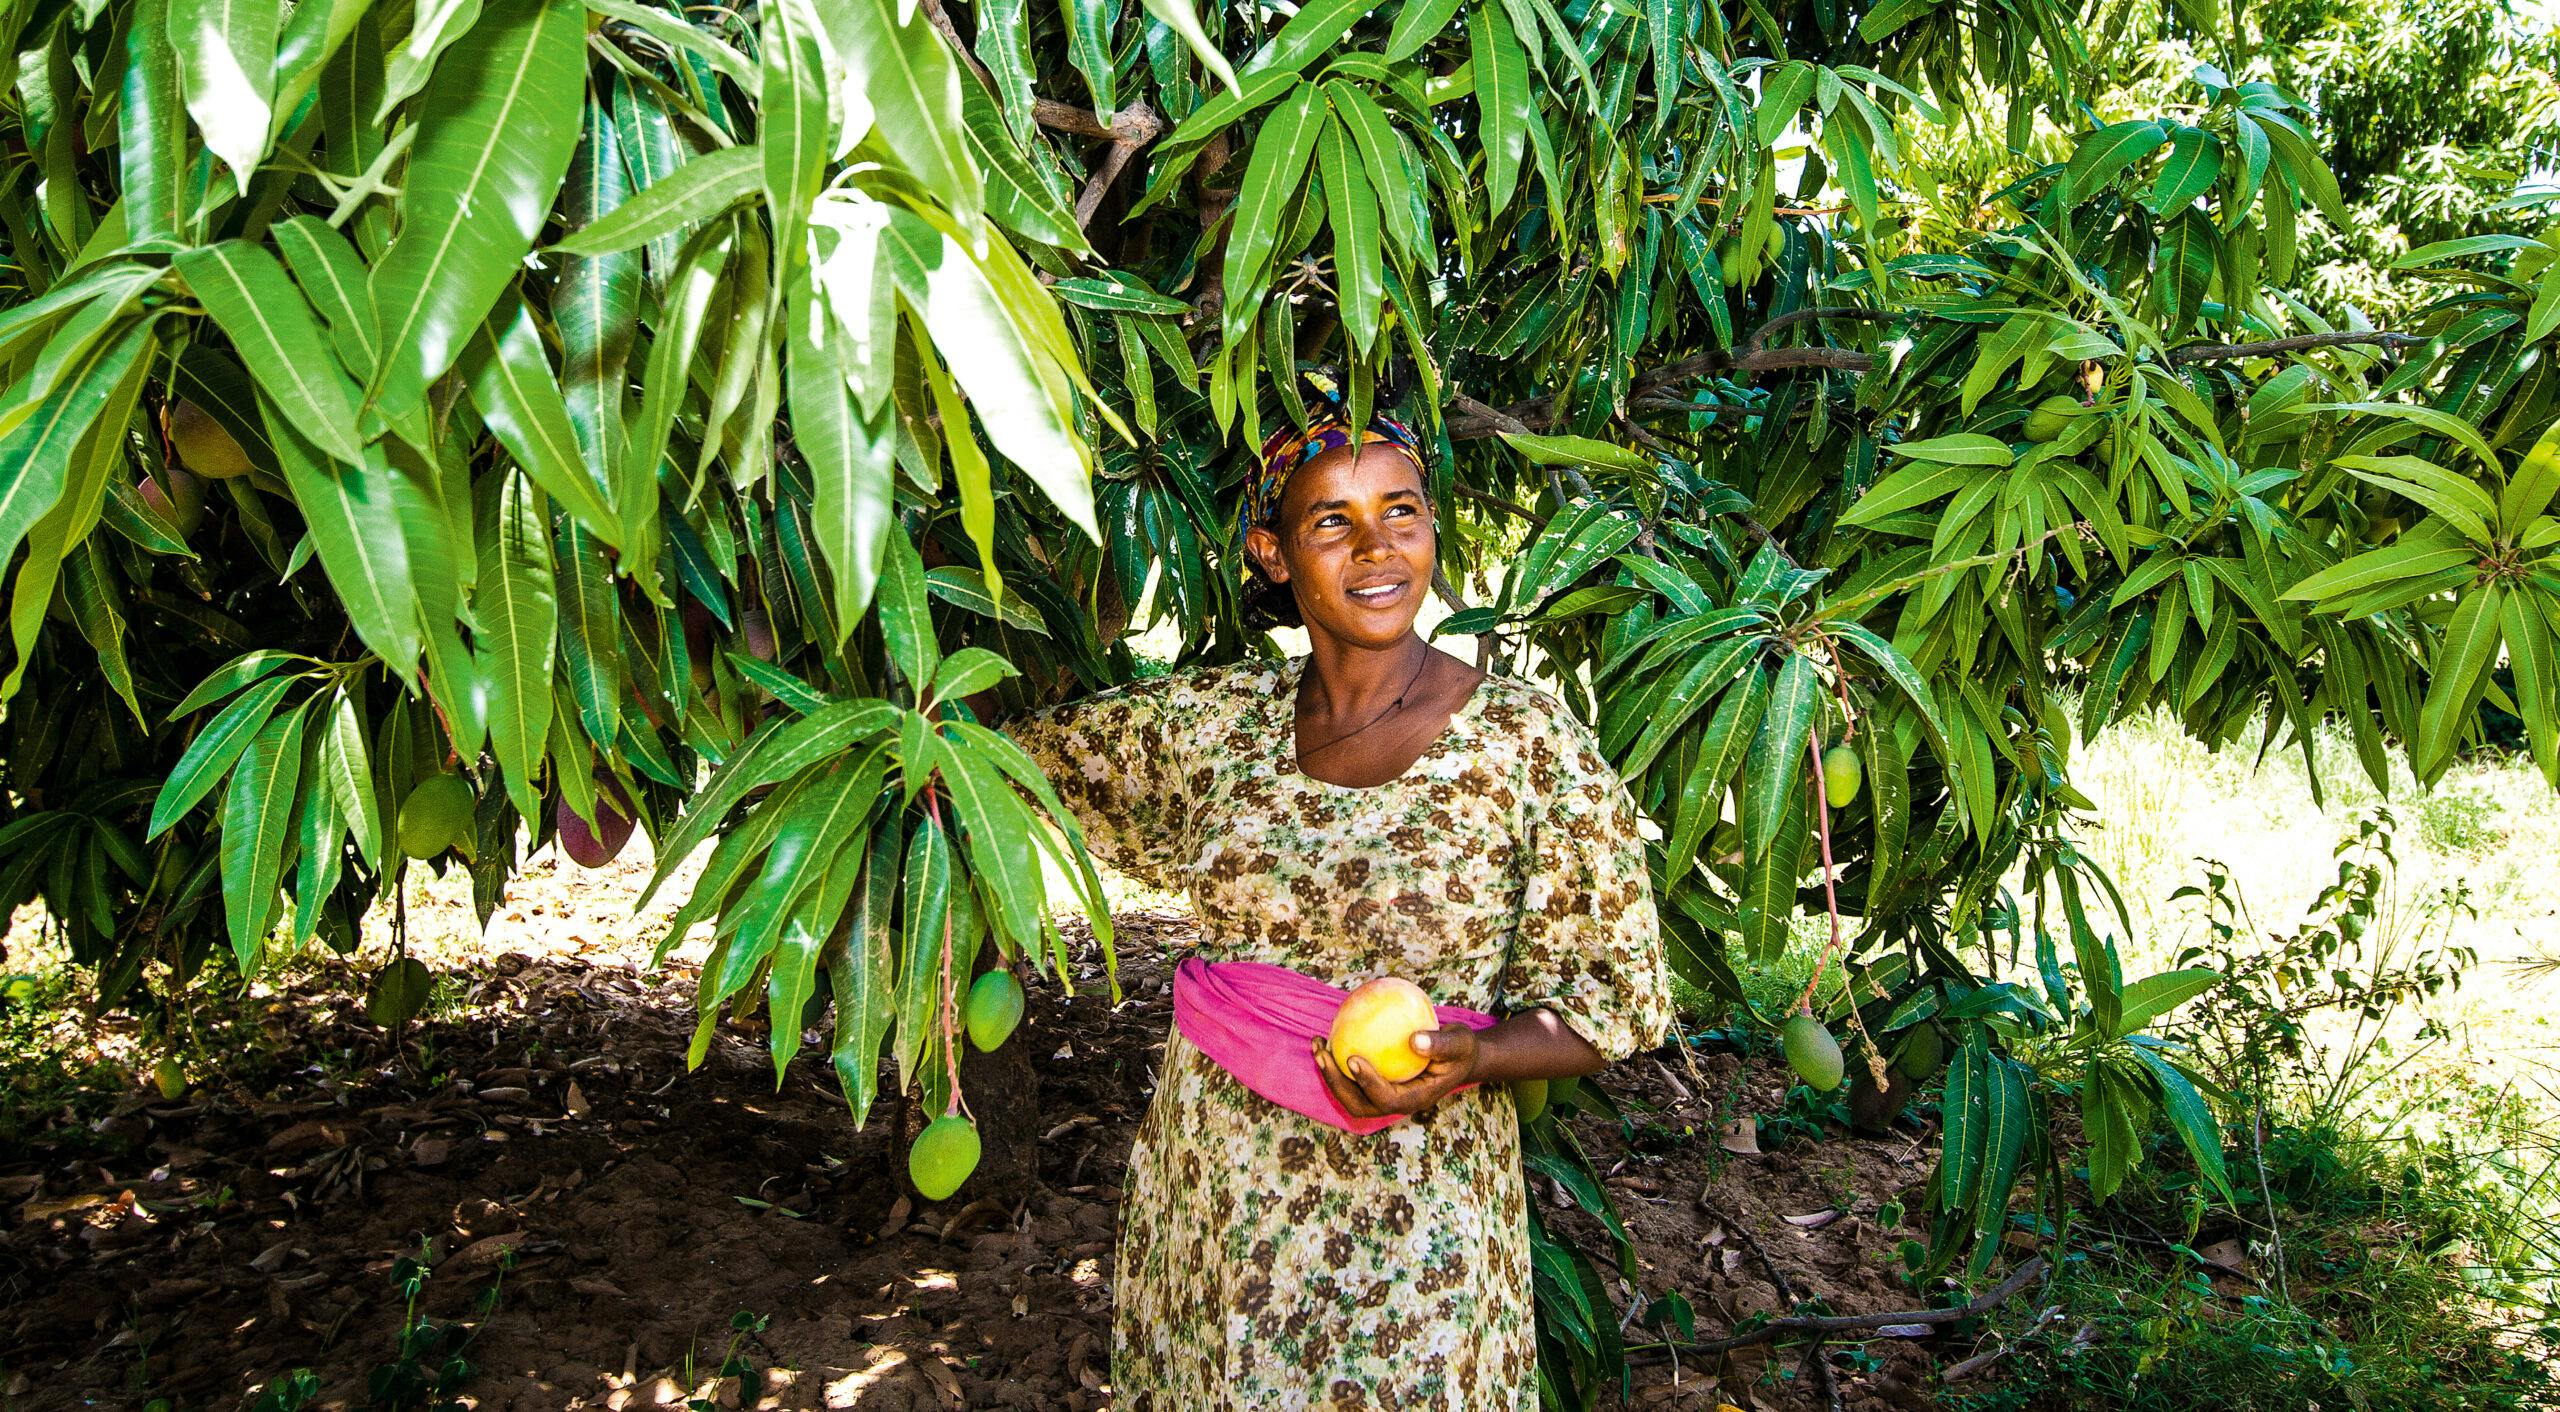 Odlaren Haregwa Gobegay har lyckats förvandla en stenig ravin i norra Etiopien till en ekologisk fruktträdgård med nära 7 000 mangoträd. Hon är en av de etiopiska småbrukare som tillsammans med vår samarbetsorganisation, Institute for Sustainable Development (ISD), lyckats vända utvecklingen i området. https://staging.naturskyddsforeningen.se/nyheter/fran-stenig-ravin-till-ekologisk-frukttradgard